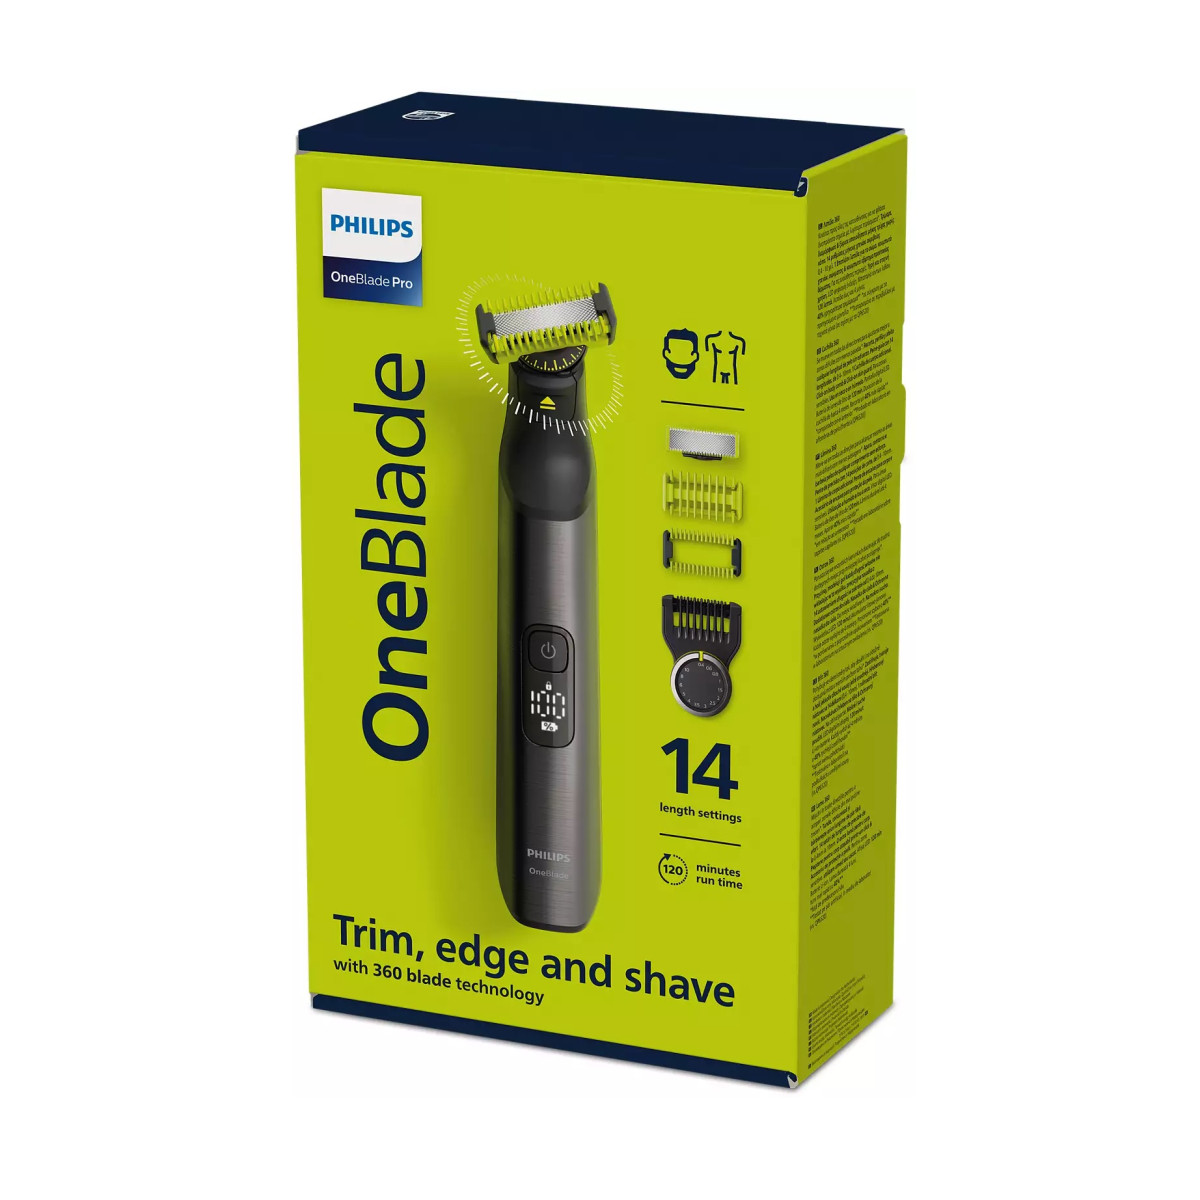 Ξυριστική Μηχανή Philips Oneblade Pro QP6551/15 Επαναφορτιζόμενη Ξυριστικές μηχανές